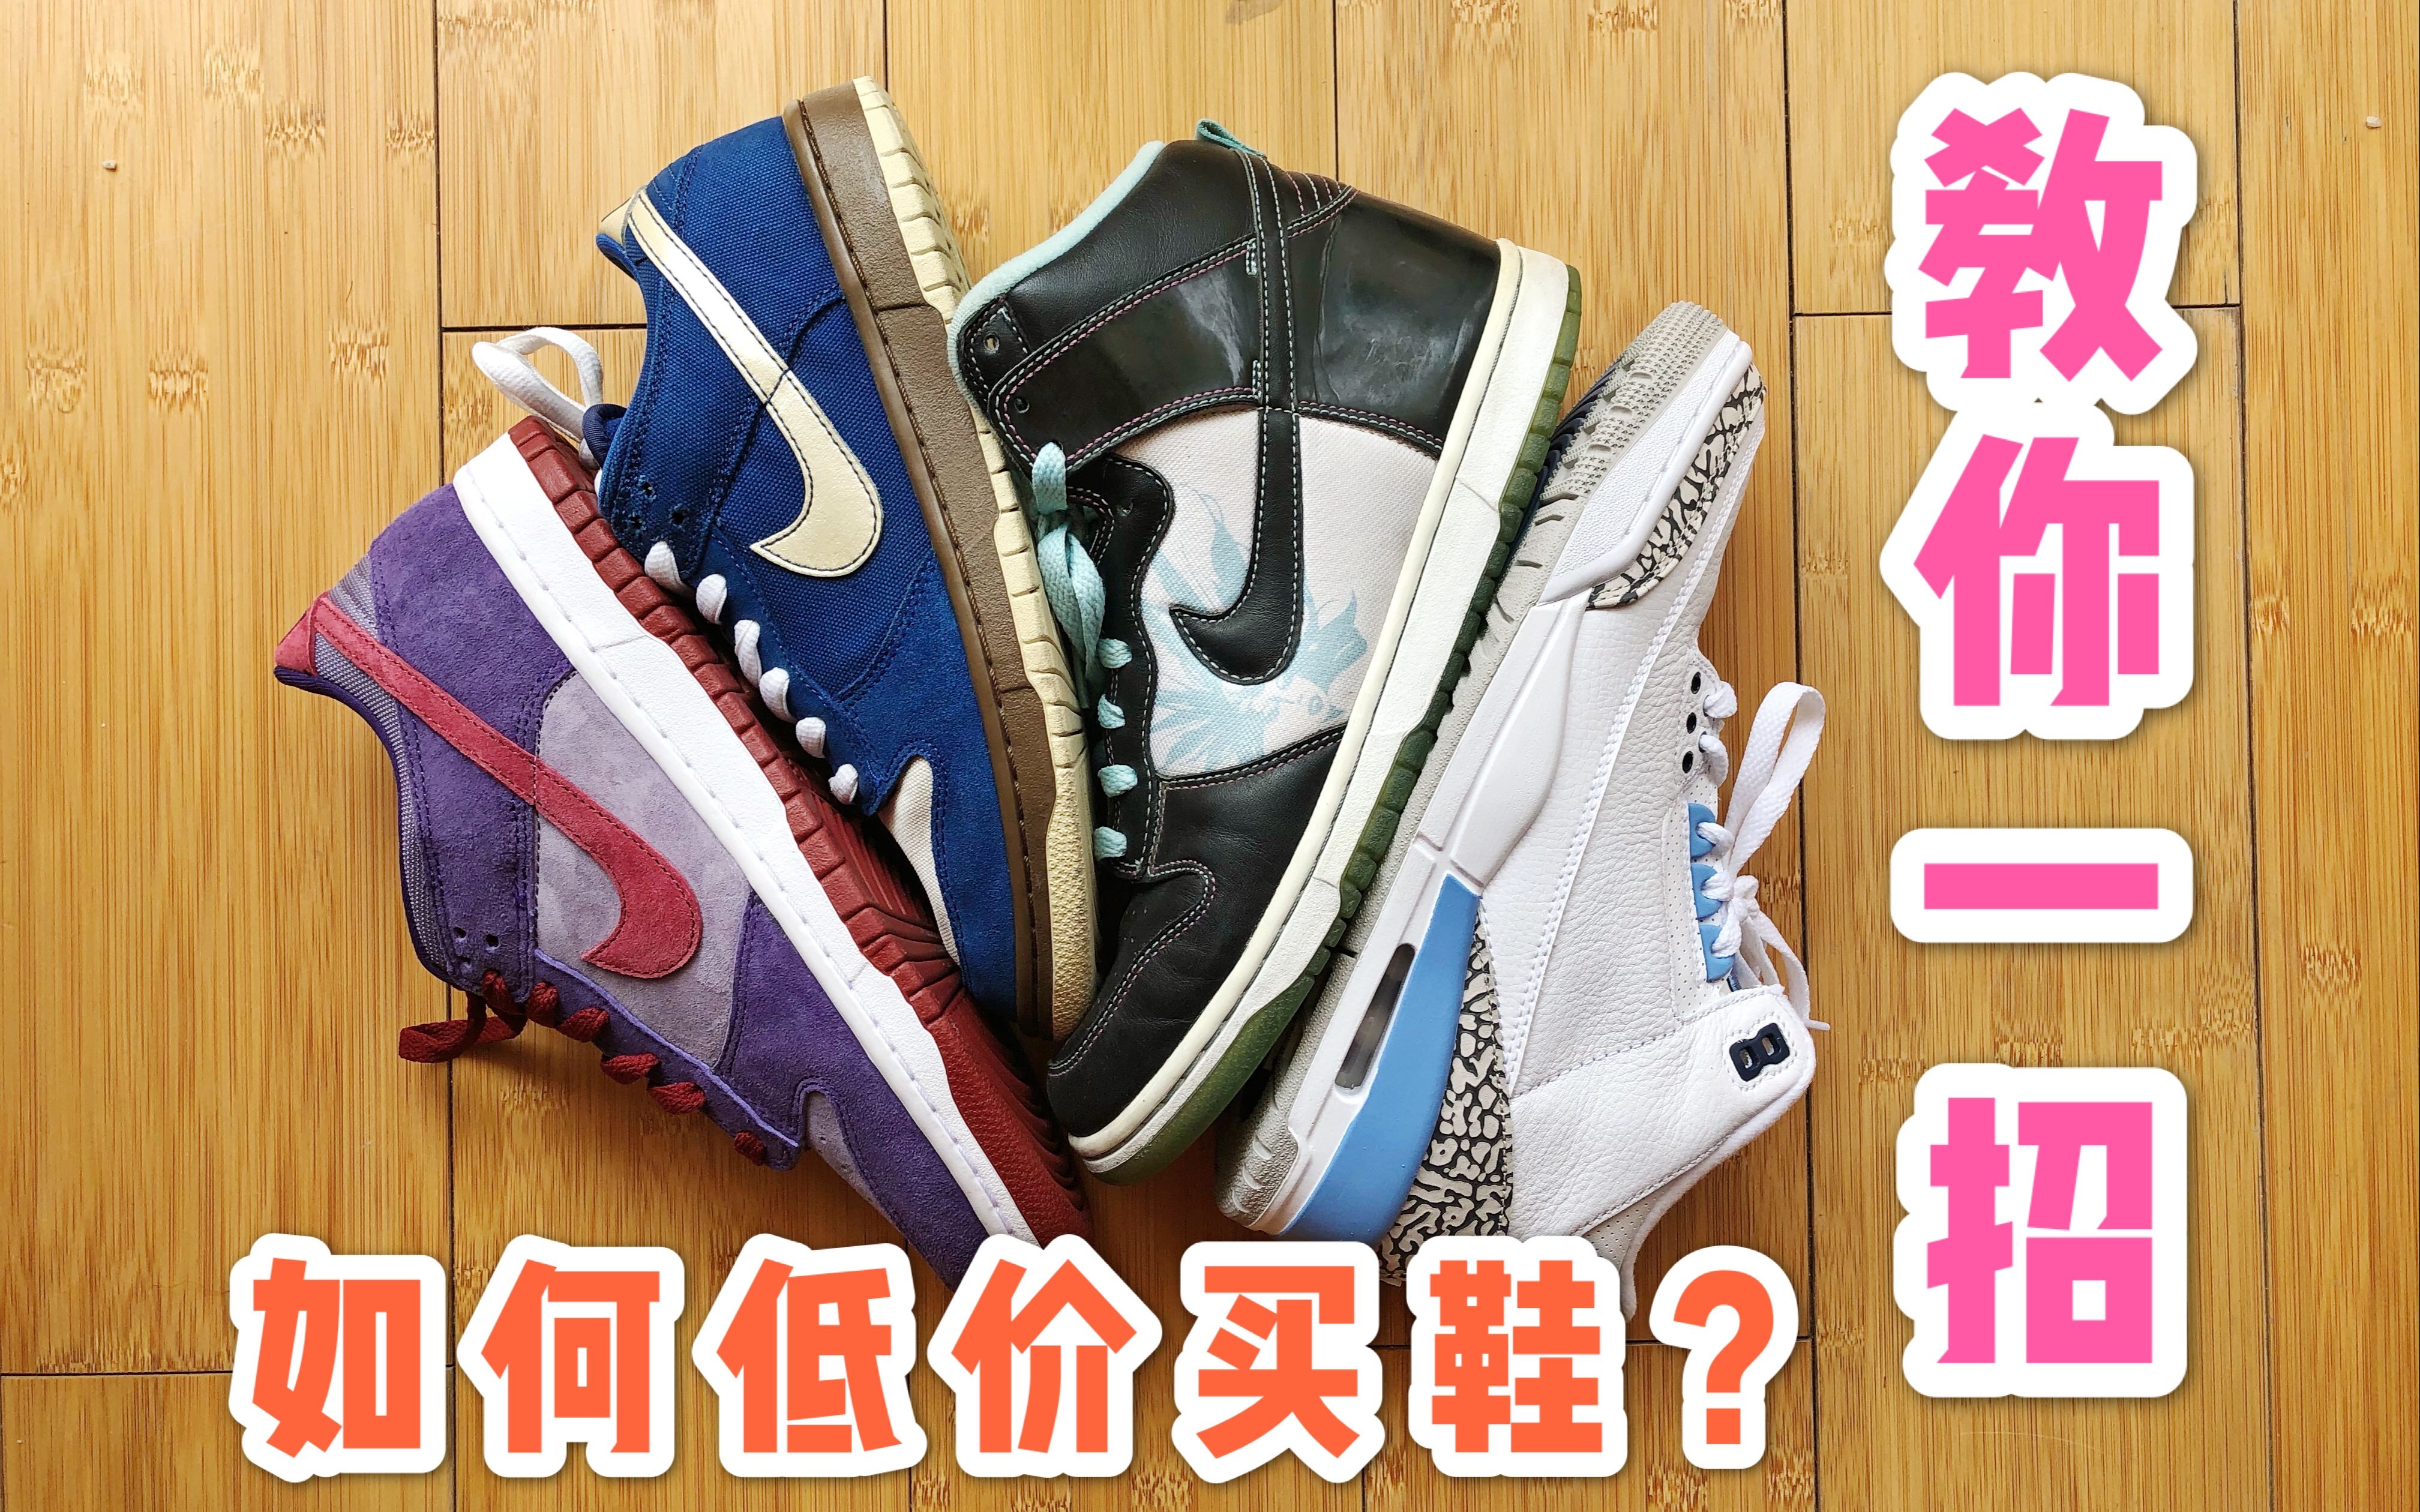 11137号-设计一张卖鞋的传单（7号）-中标: Dingxue_K68论坛